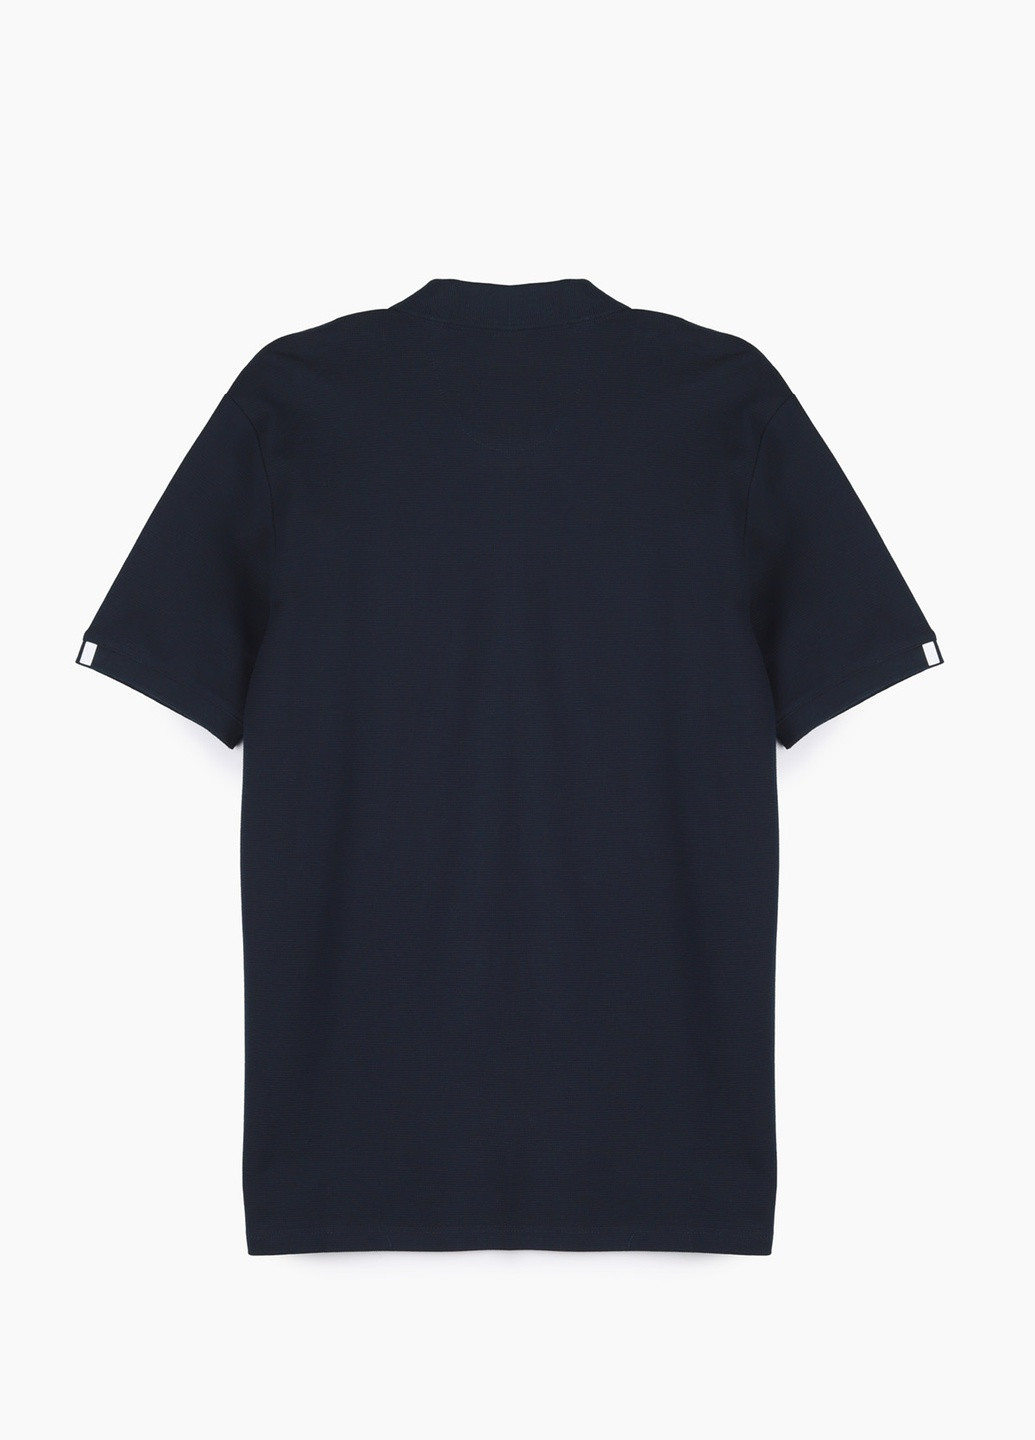 Темно-синяя футболка-поло для мужчин MCL однотонная